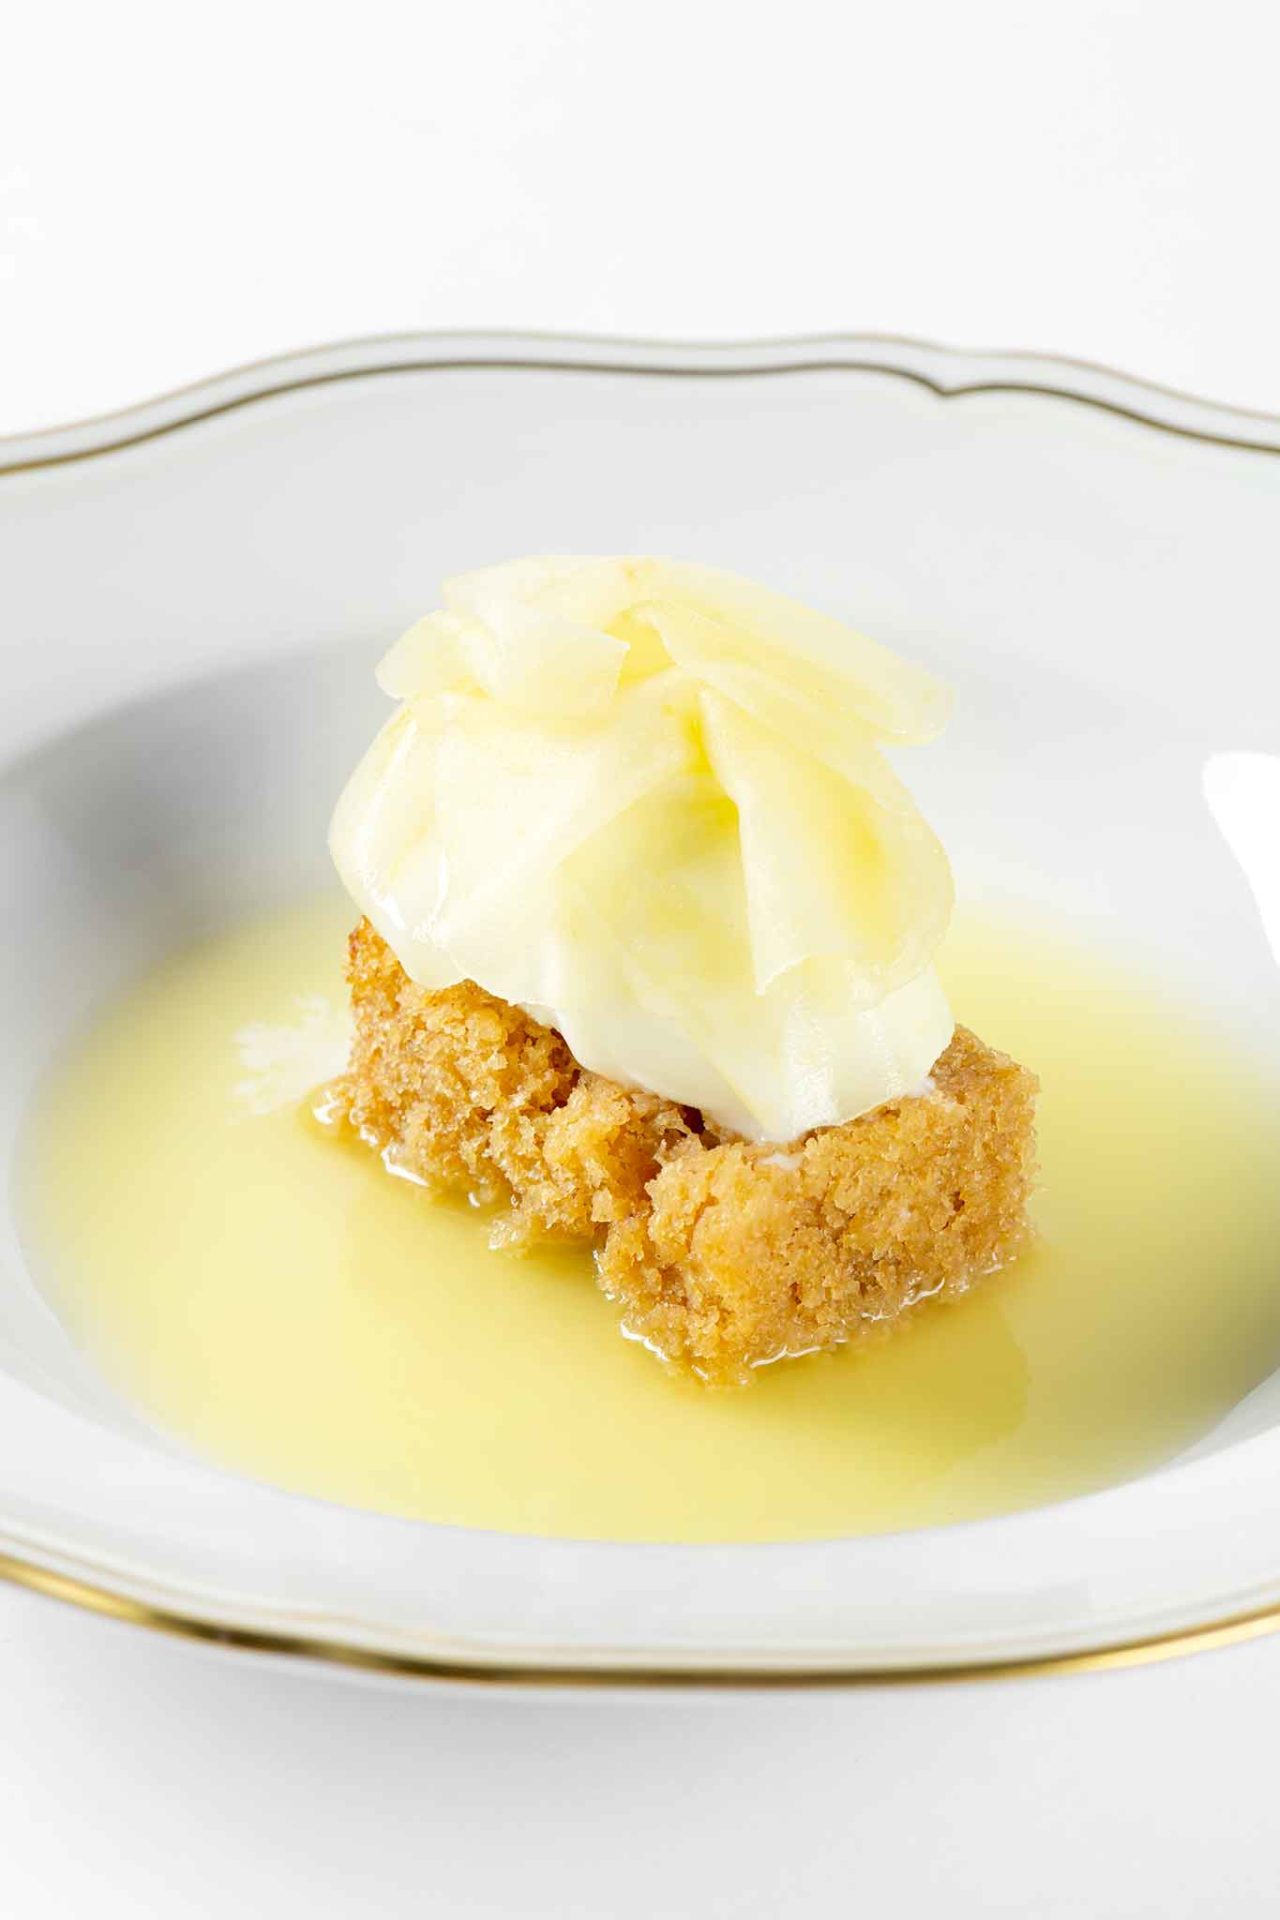 Nuovo menu degustazione ristorante Reale: mela e yogurt